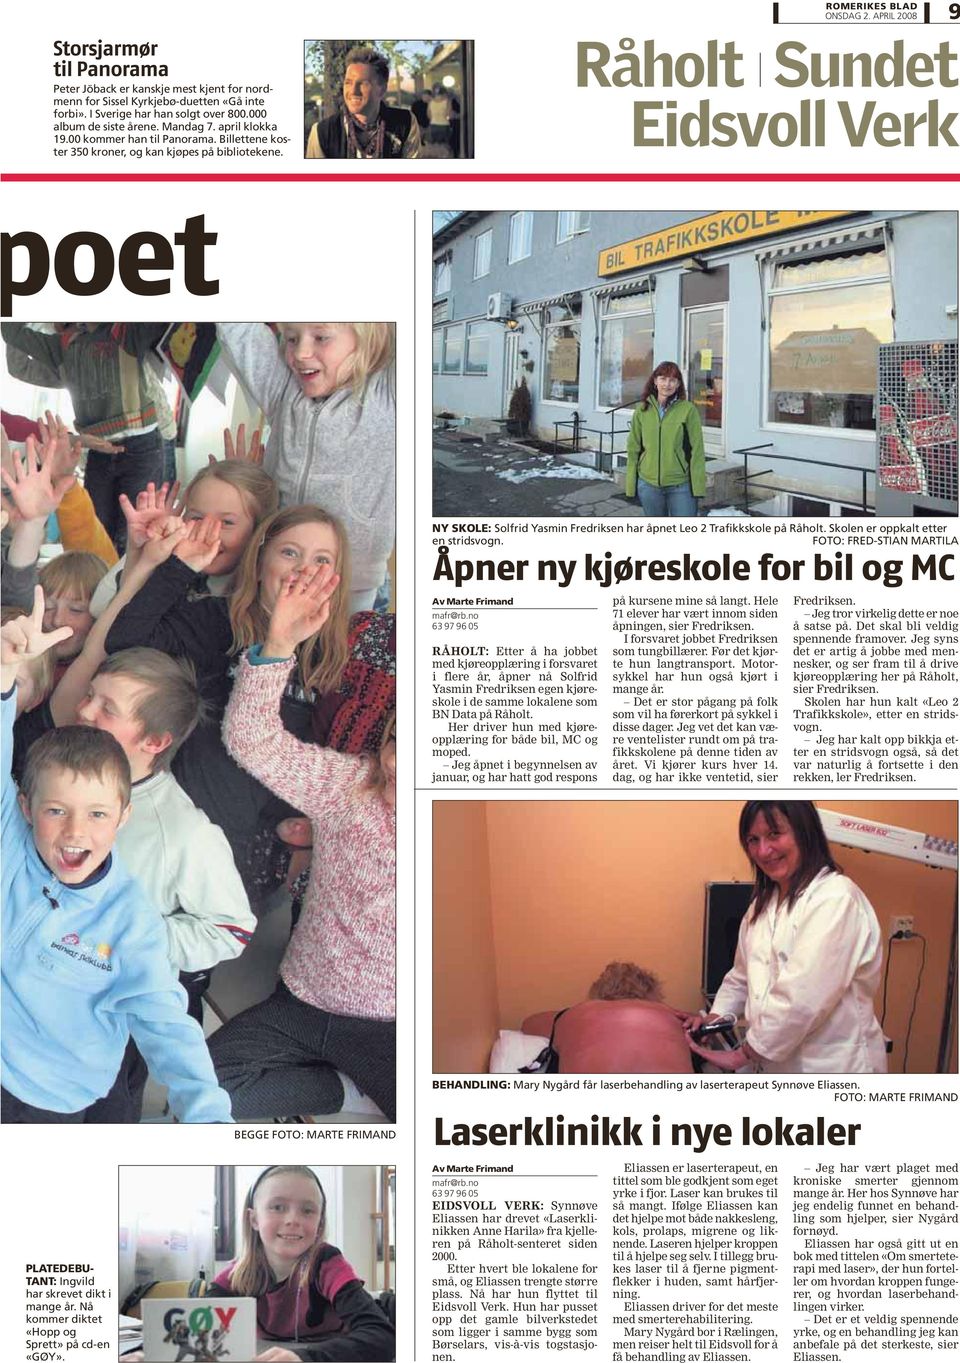 Råholt Sundet Eidsvoll Verk 9 oet NY SKOLE: Solfrid Yasmin Fredriksen har åpnet Leo 2 Trafikkskole på Råholt. Skolen er oppkalt etter en stridsvogn.